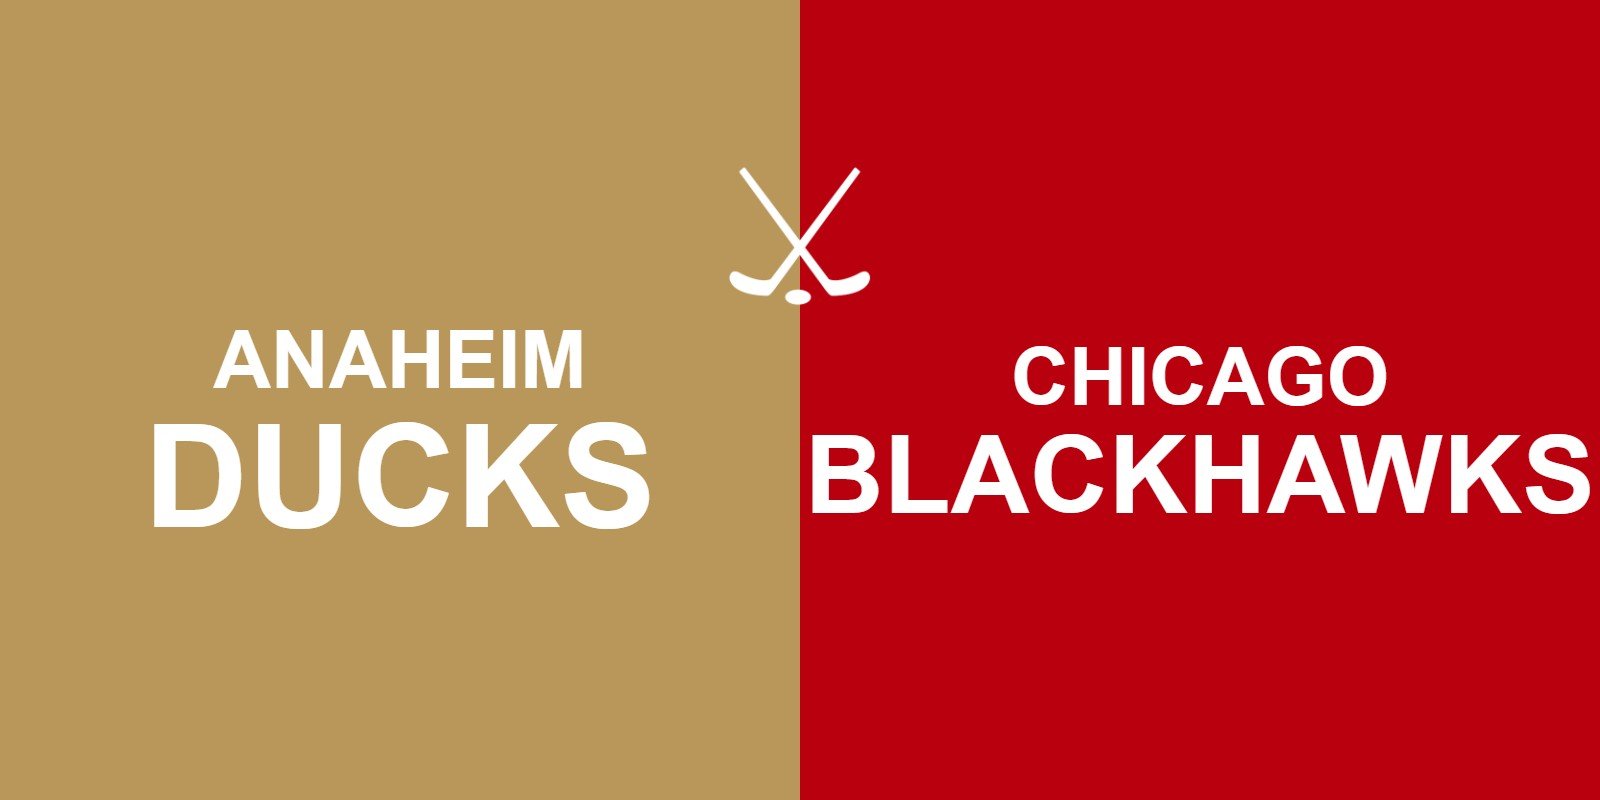 Ducks vs Blackhawks